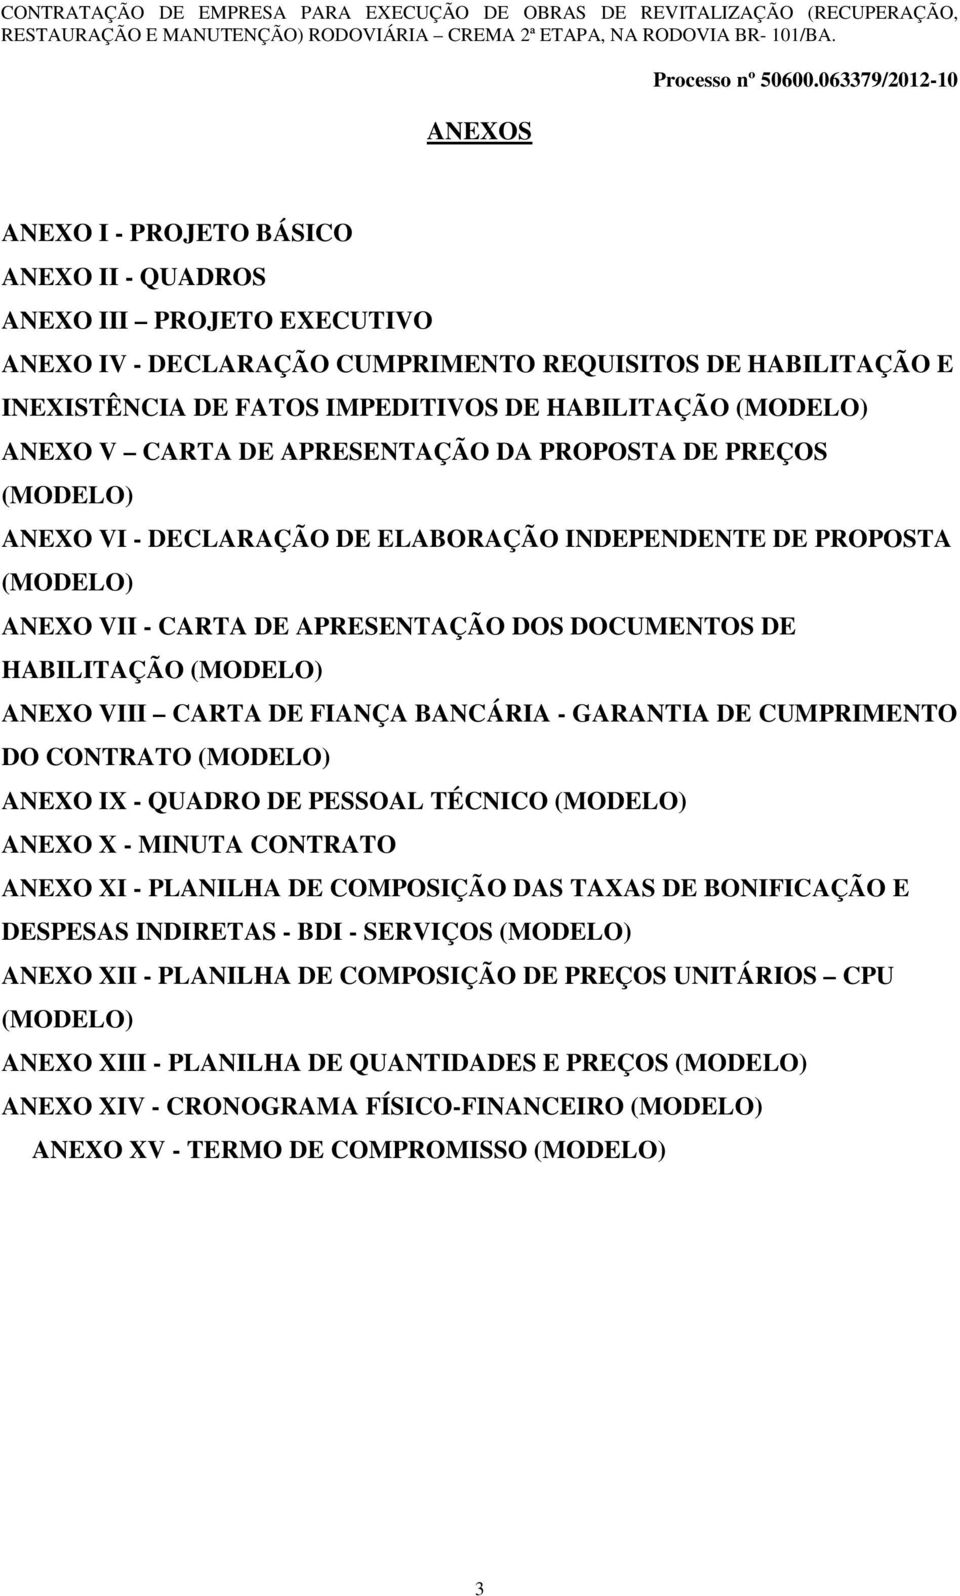 (MODELO) ANEXO VIII CARTA DE FIANÇA BANCÁRIA - GARANTIA DE CUMPRIMENTO DO CONTRATO (MODELO) ANEXO IX - QUADRO DE PESSOAL TÉCNICO (MODELO) ANEXO X - MINUTA CONTRATO ANEXO XI - PLANILHA DE COMPOSIÇÃO